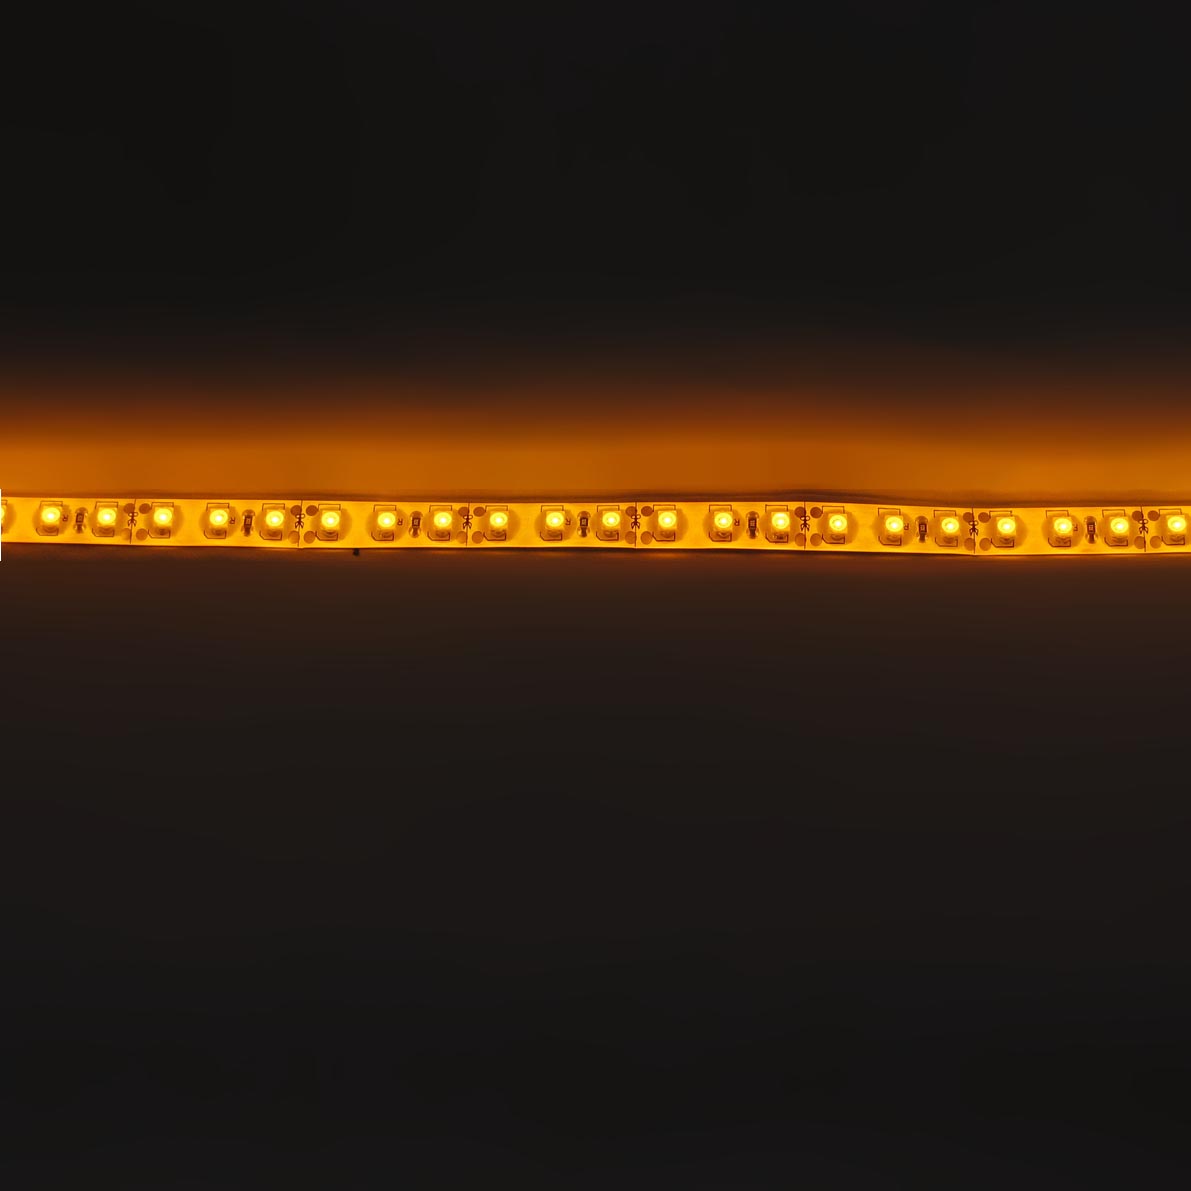 светодиодная лента standart class, 3528, 120led/m, yellow, 12v, ip65, артикул 52696